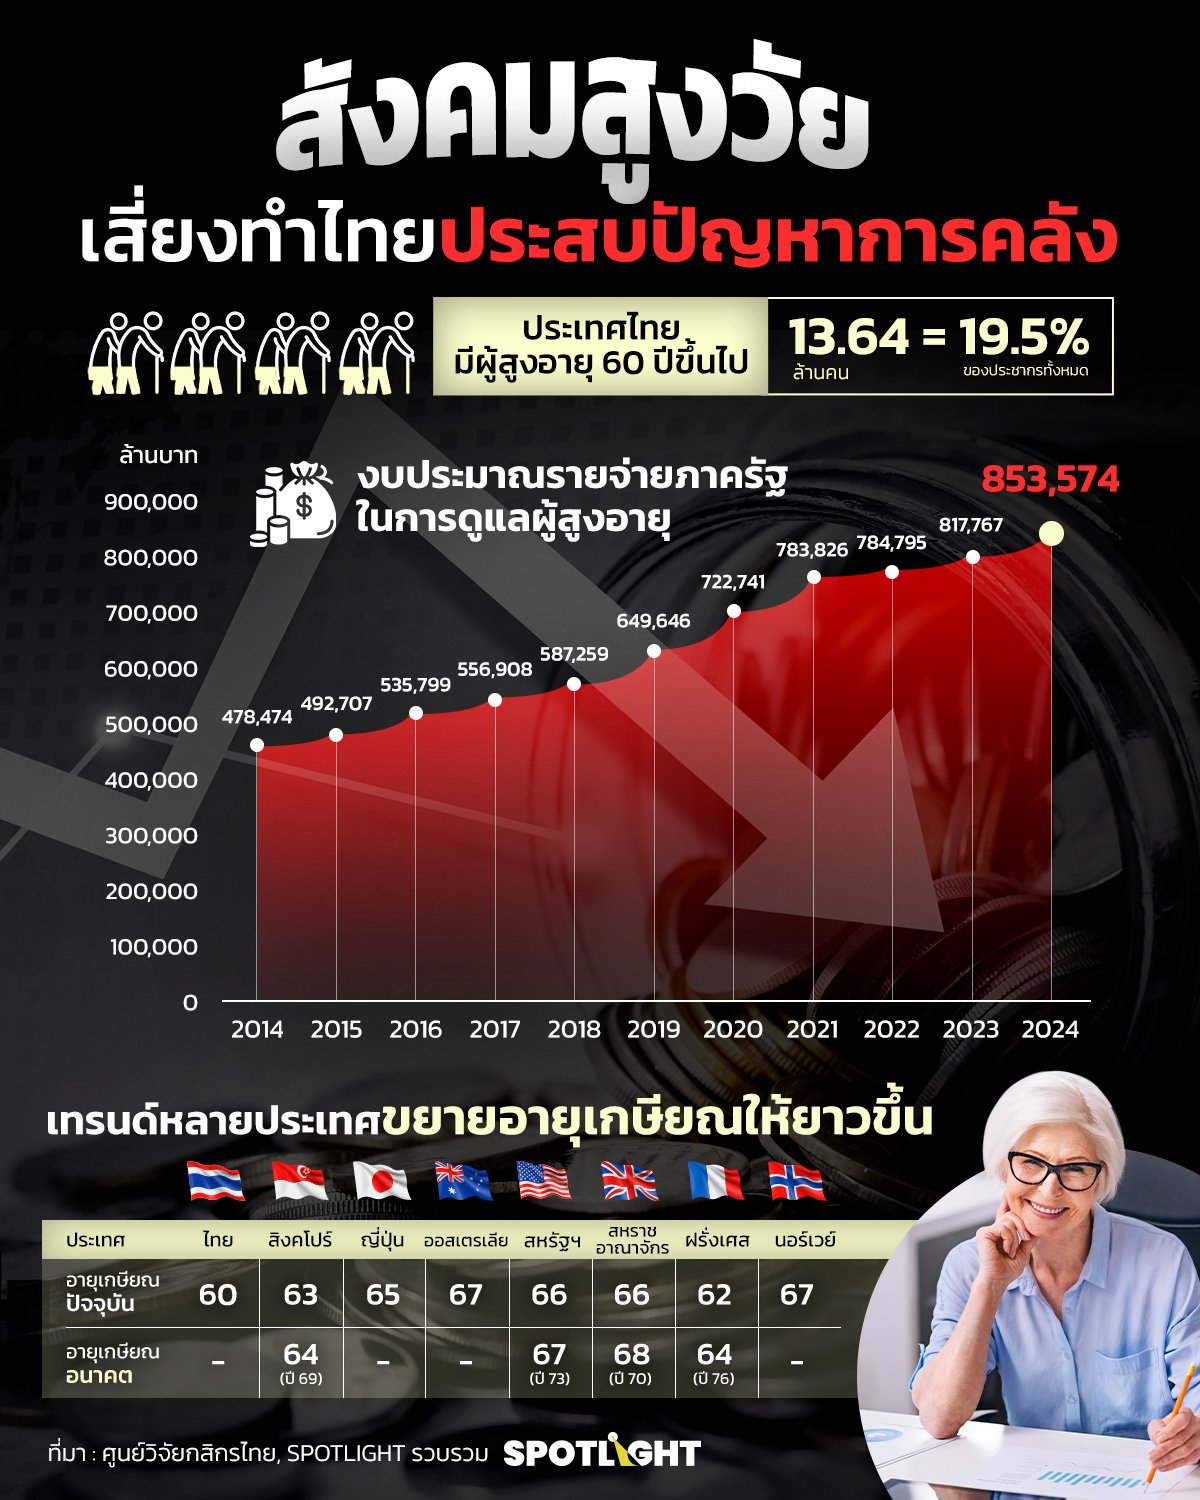 สังคมสูงวัย เสี่ยงทำประเทศไทยประสบปัญหาการคลัง     